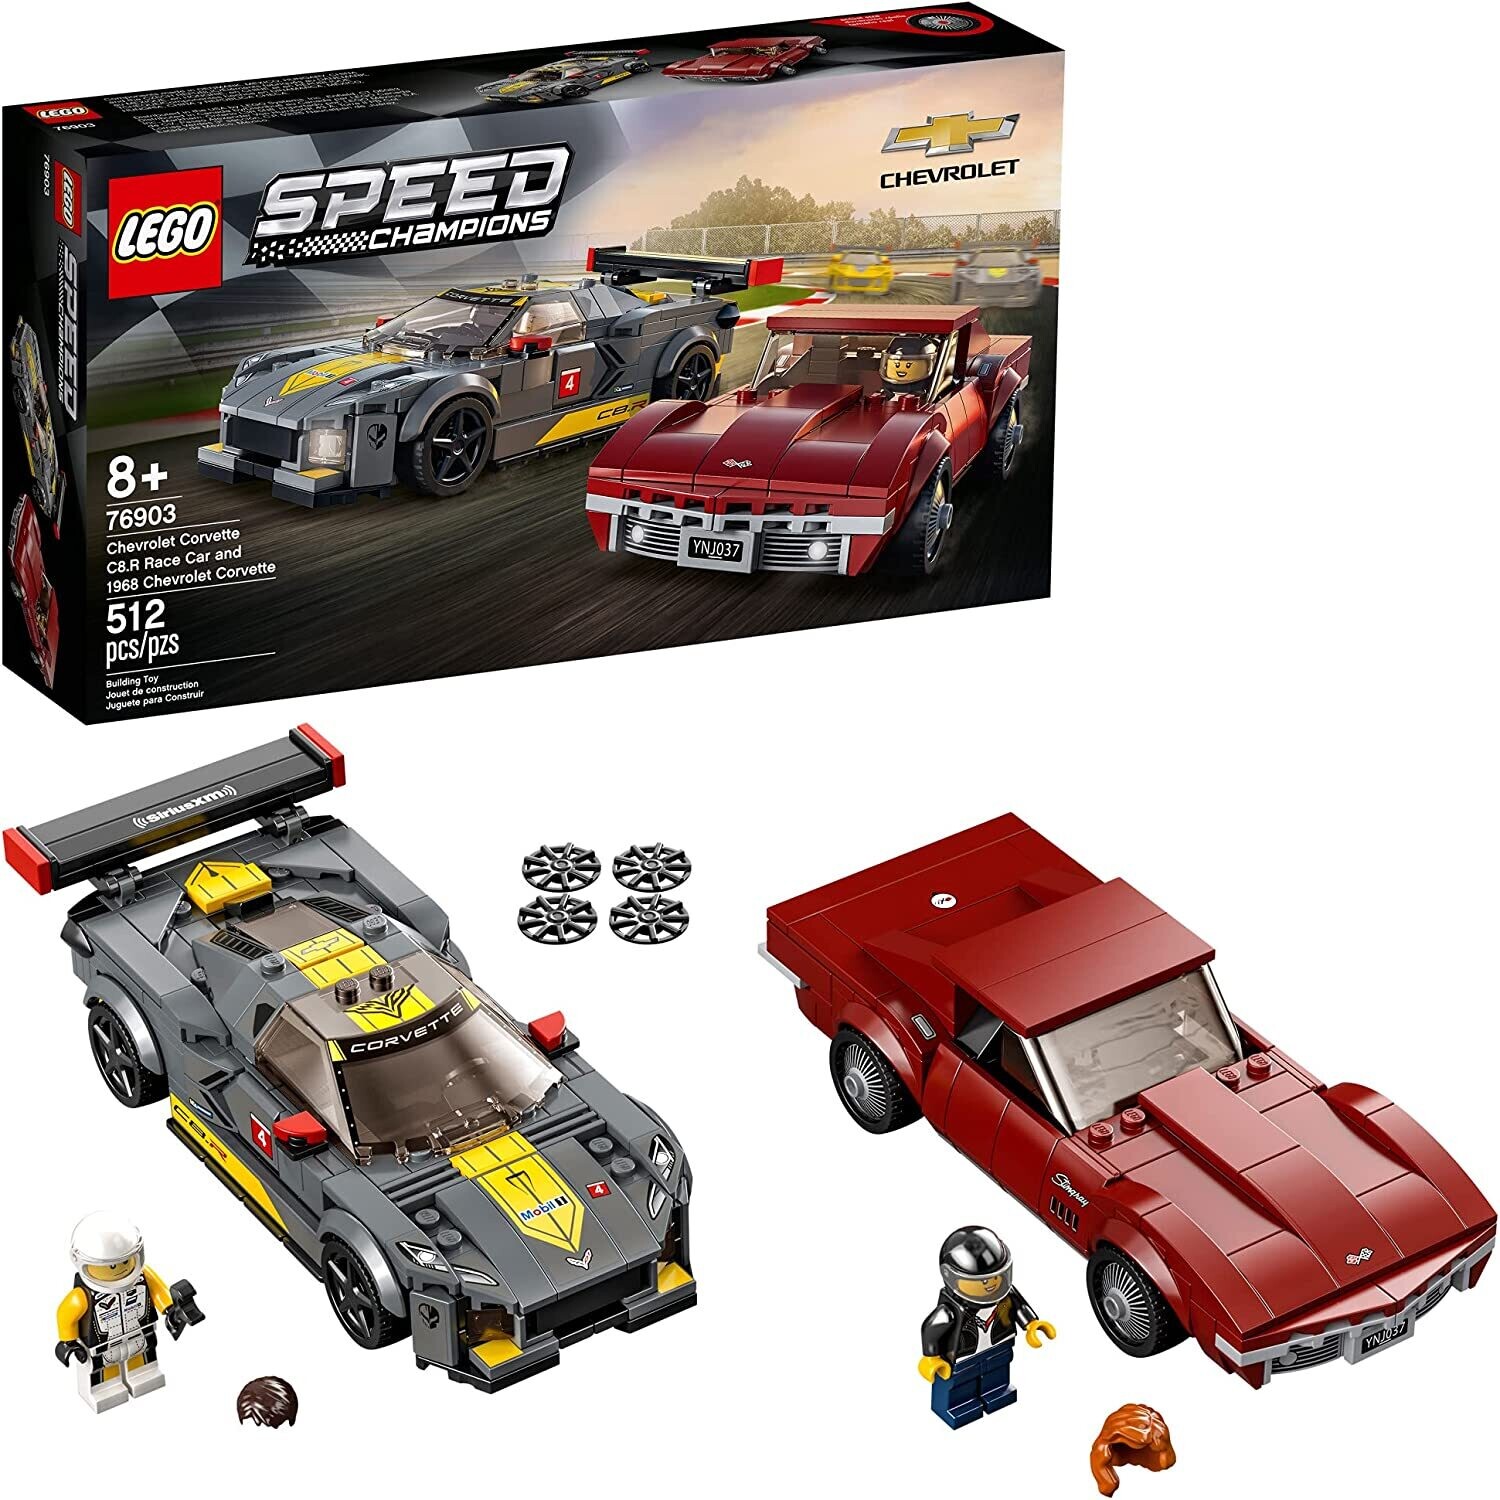 Lego 76903 Chevrolet Corvette C8.R and 1968 Chevrolet Corvette